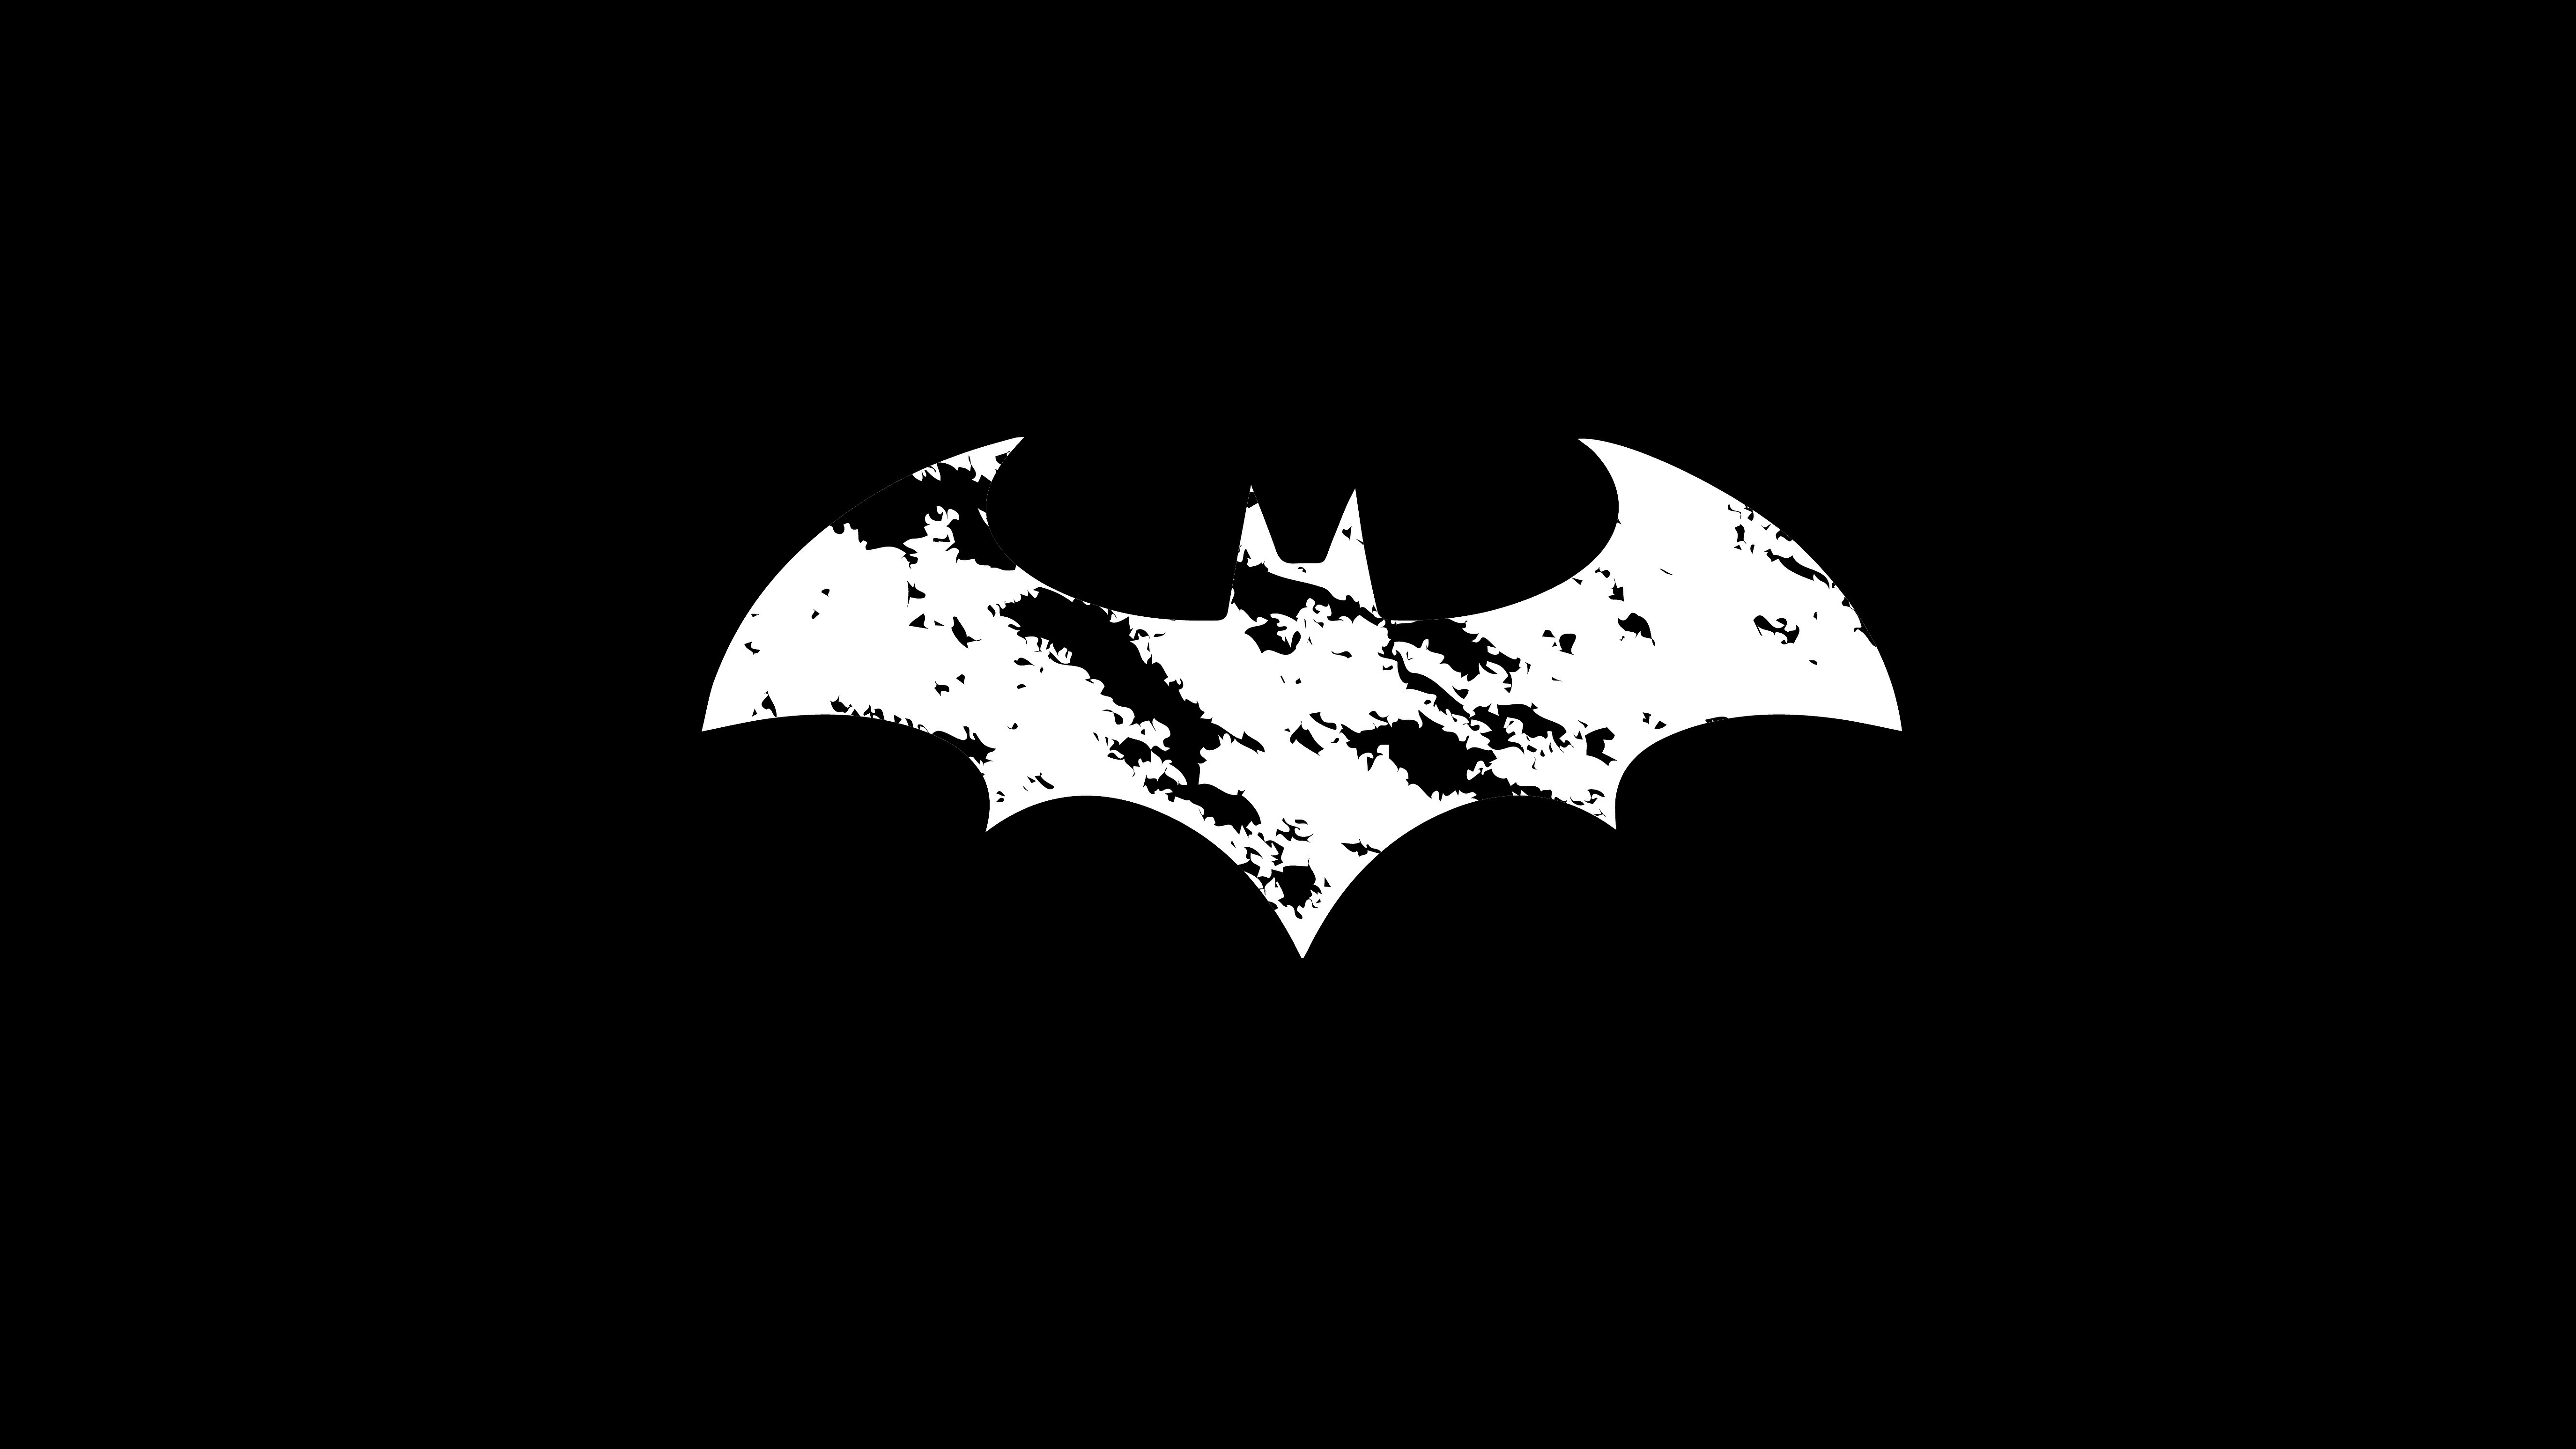 Batman Computer Wallpaper